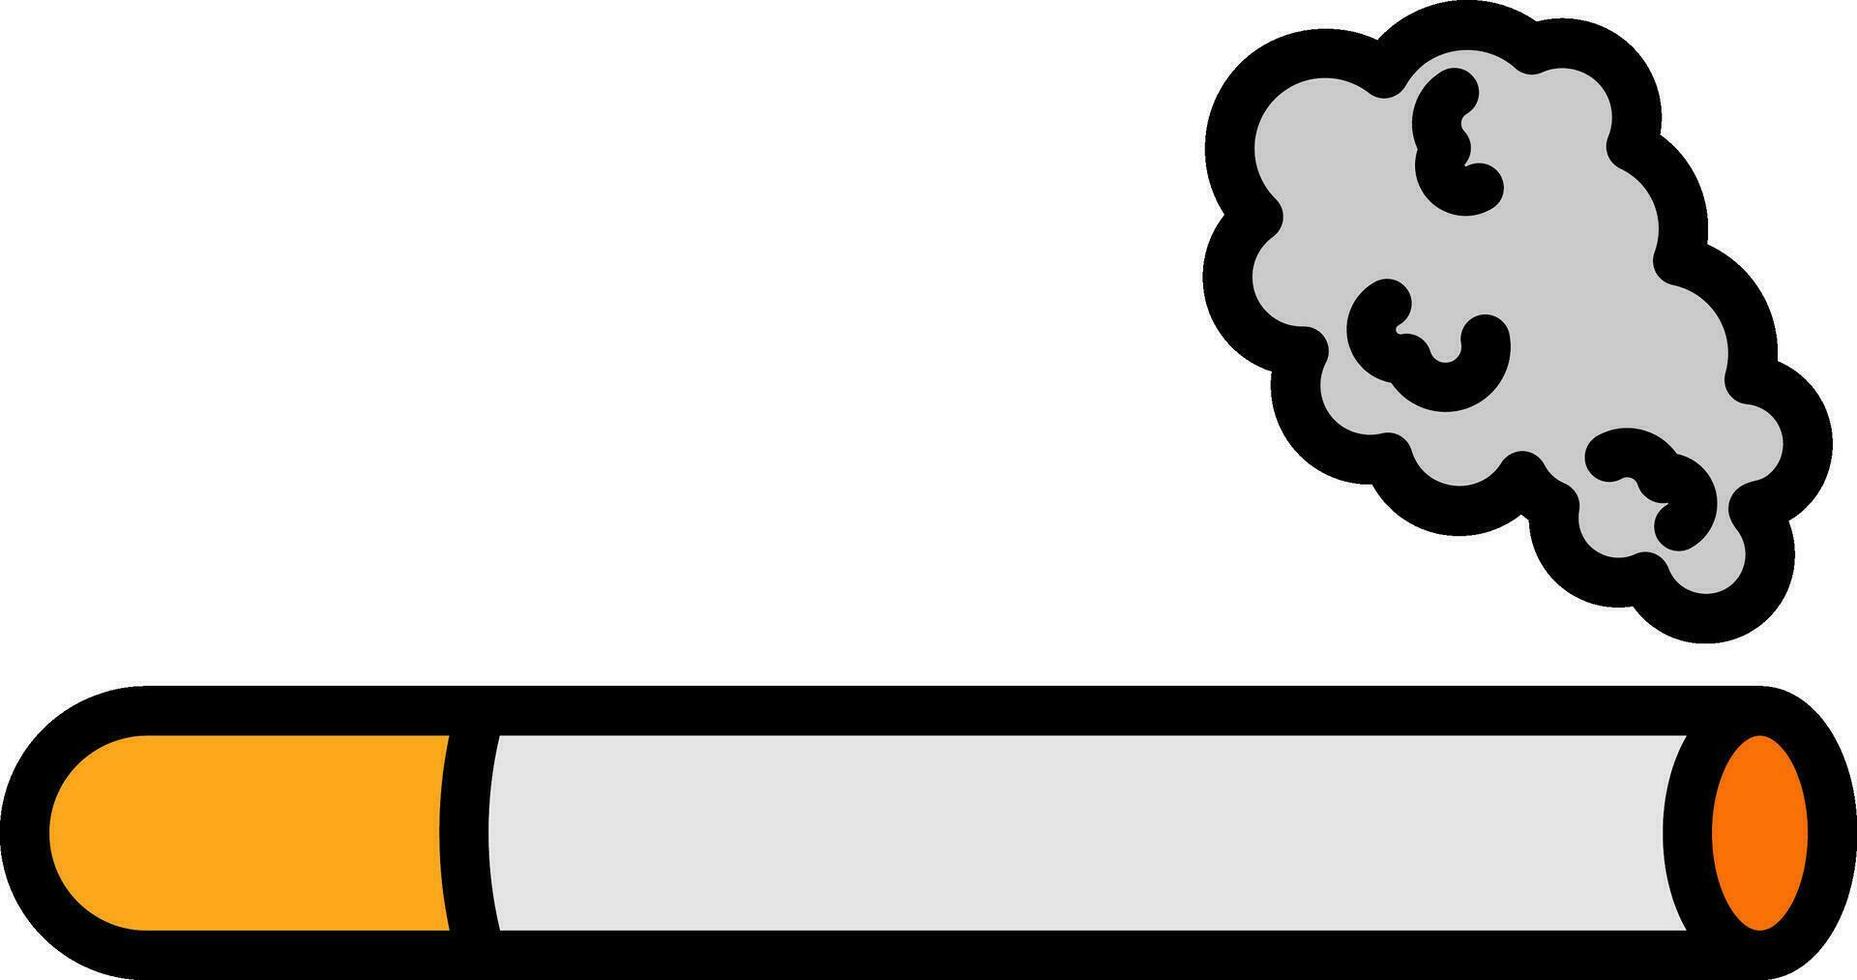 design de ícone de vetor de cigarro